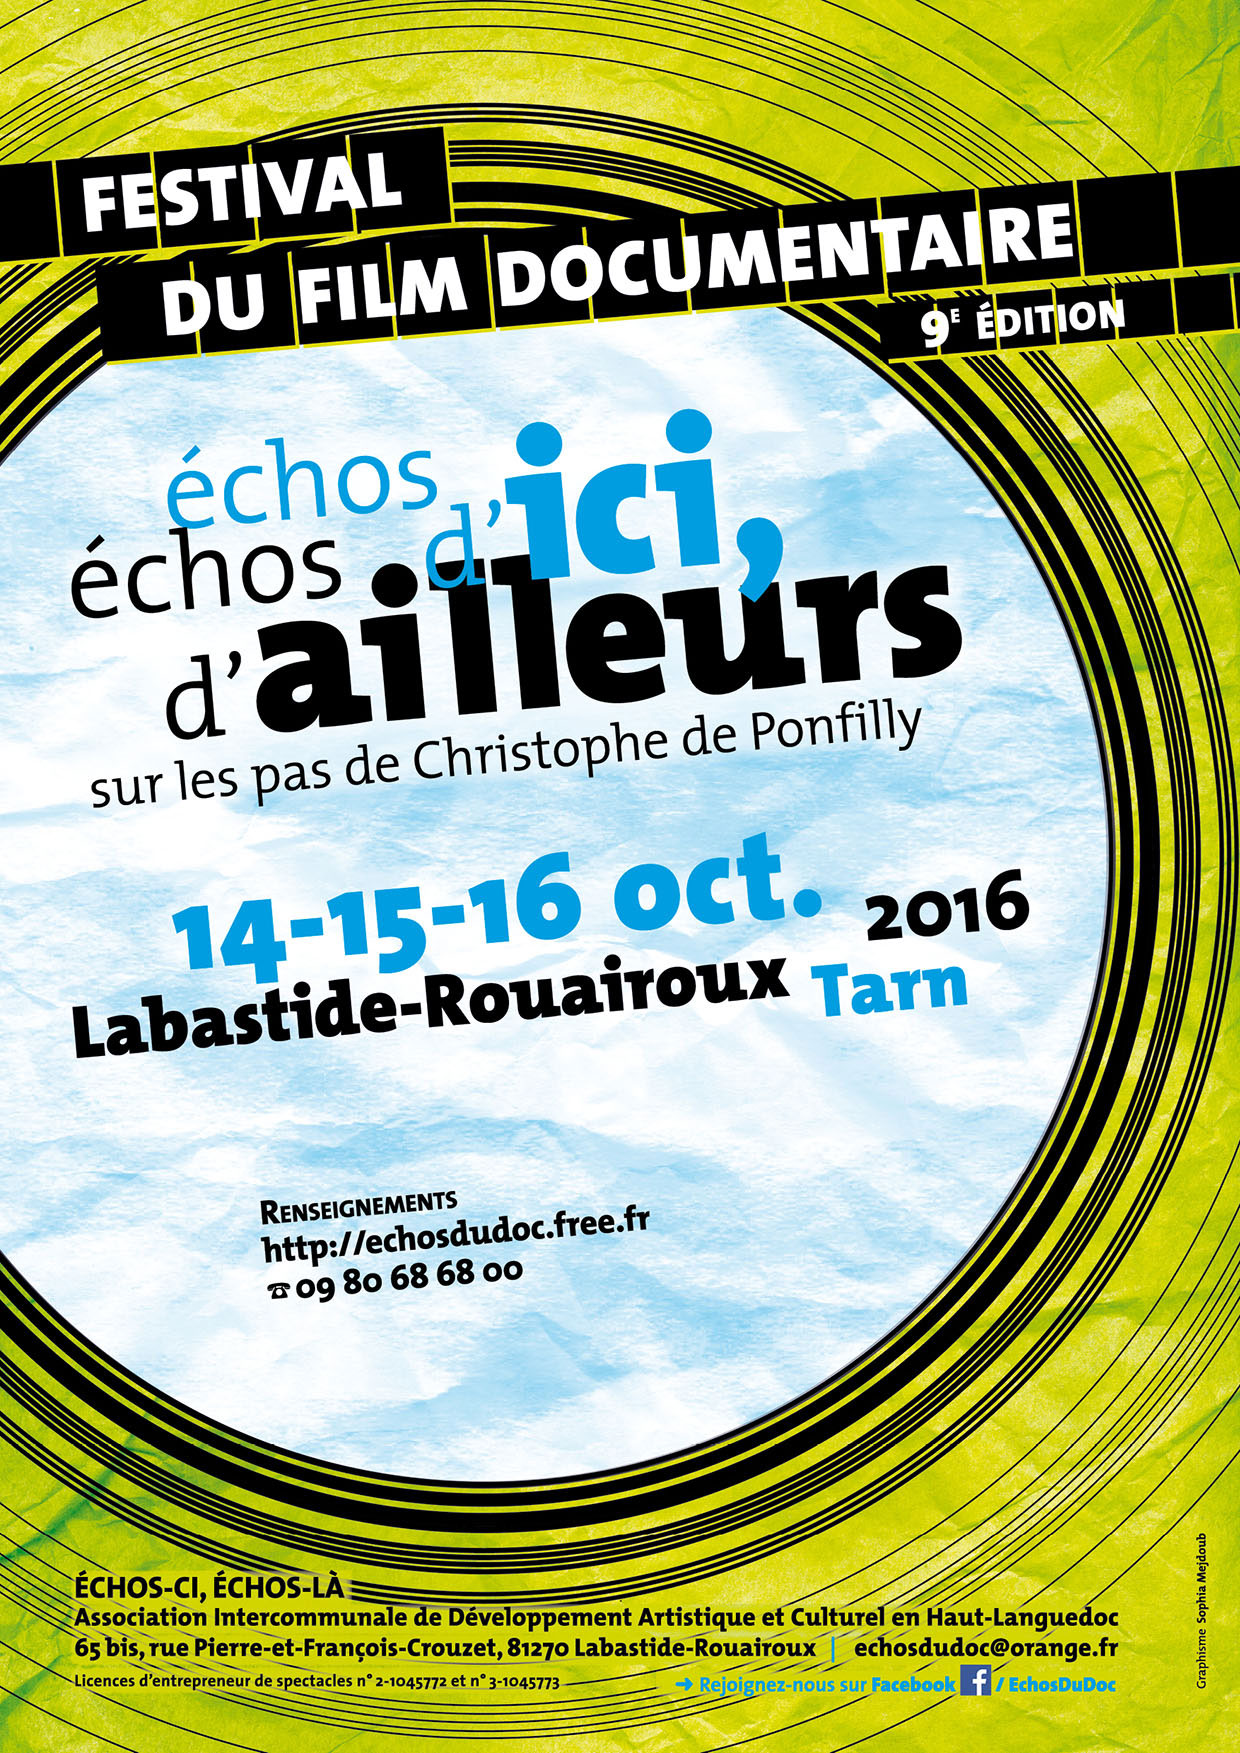 estival_du_film_documentaire_2016